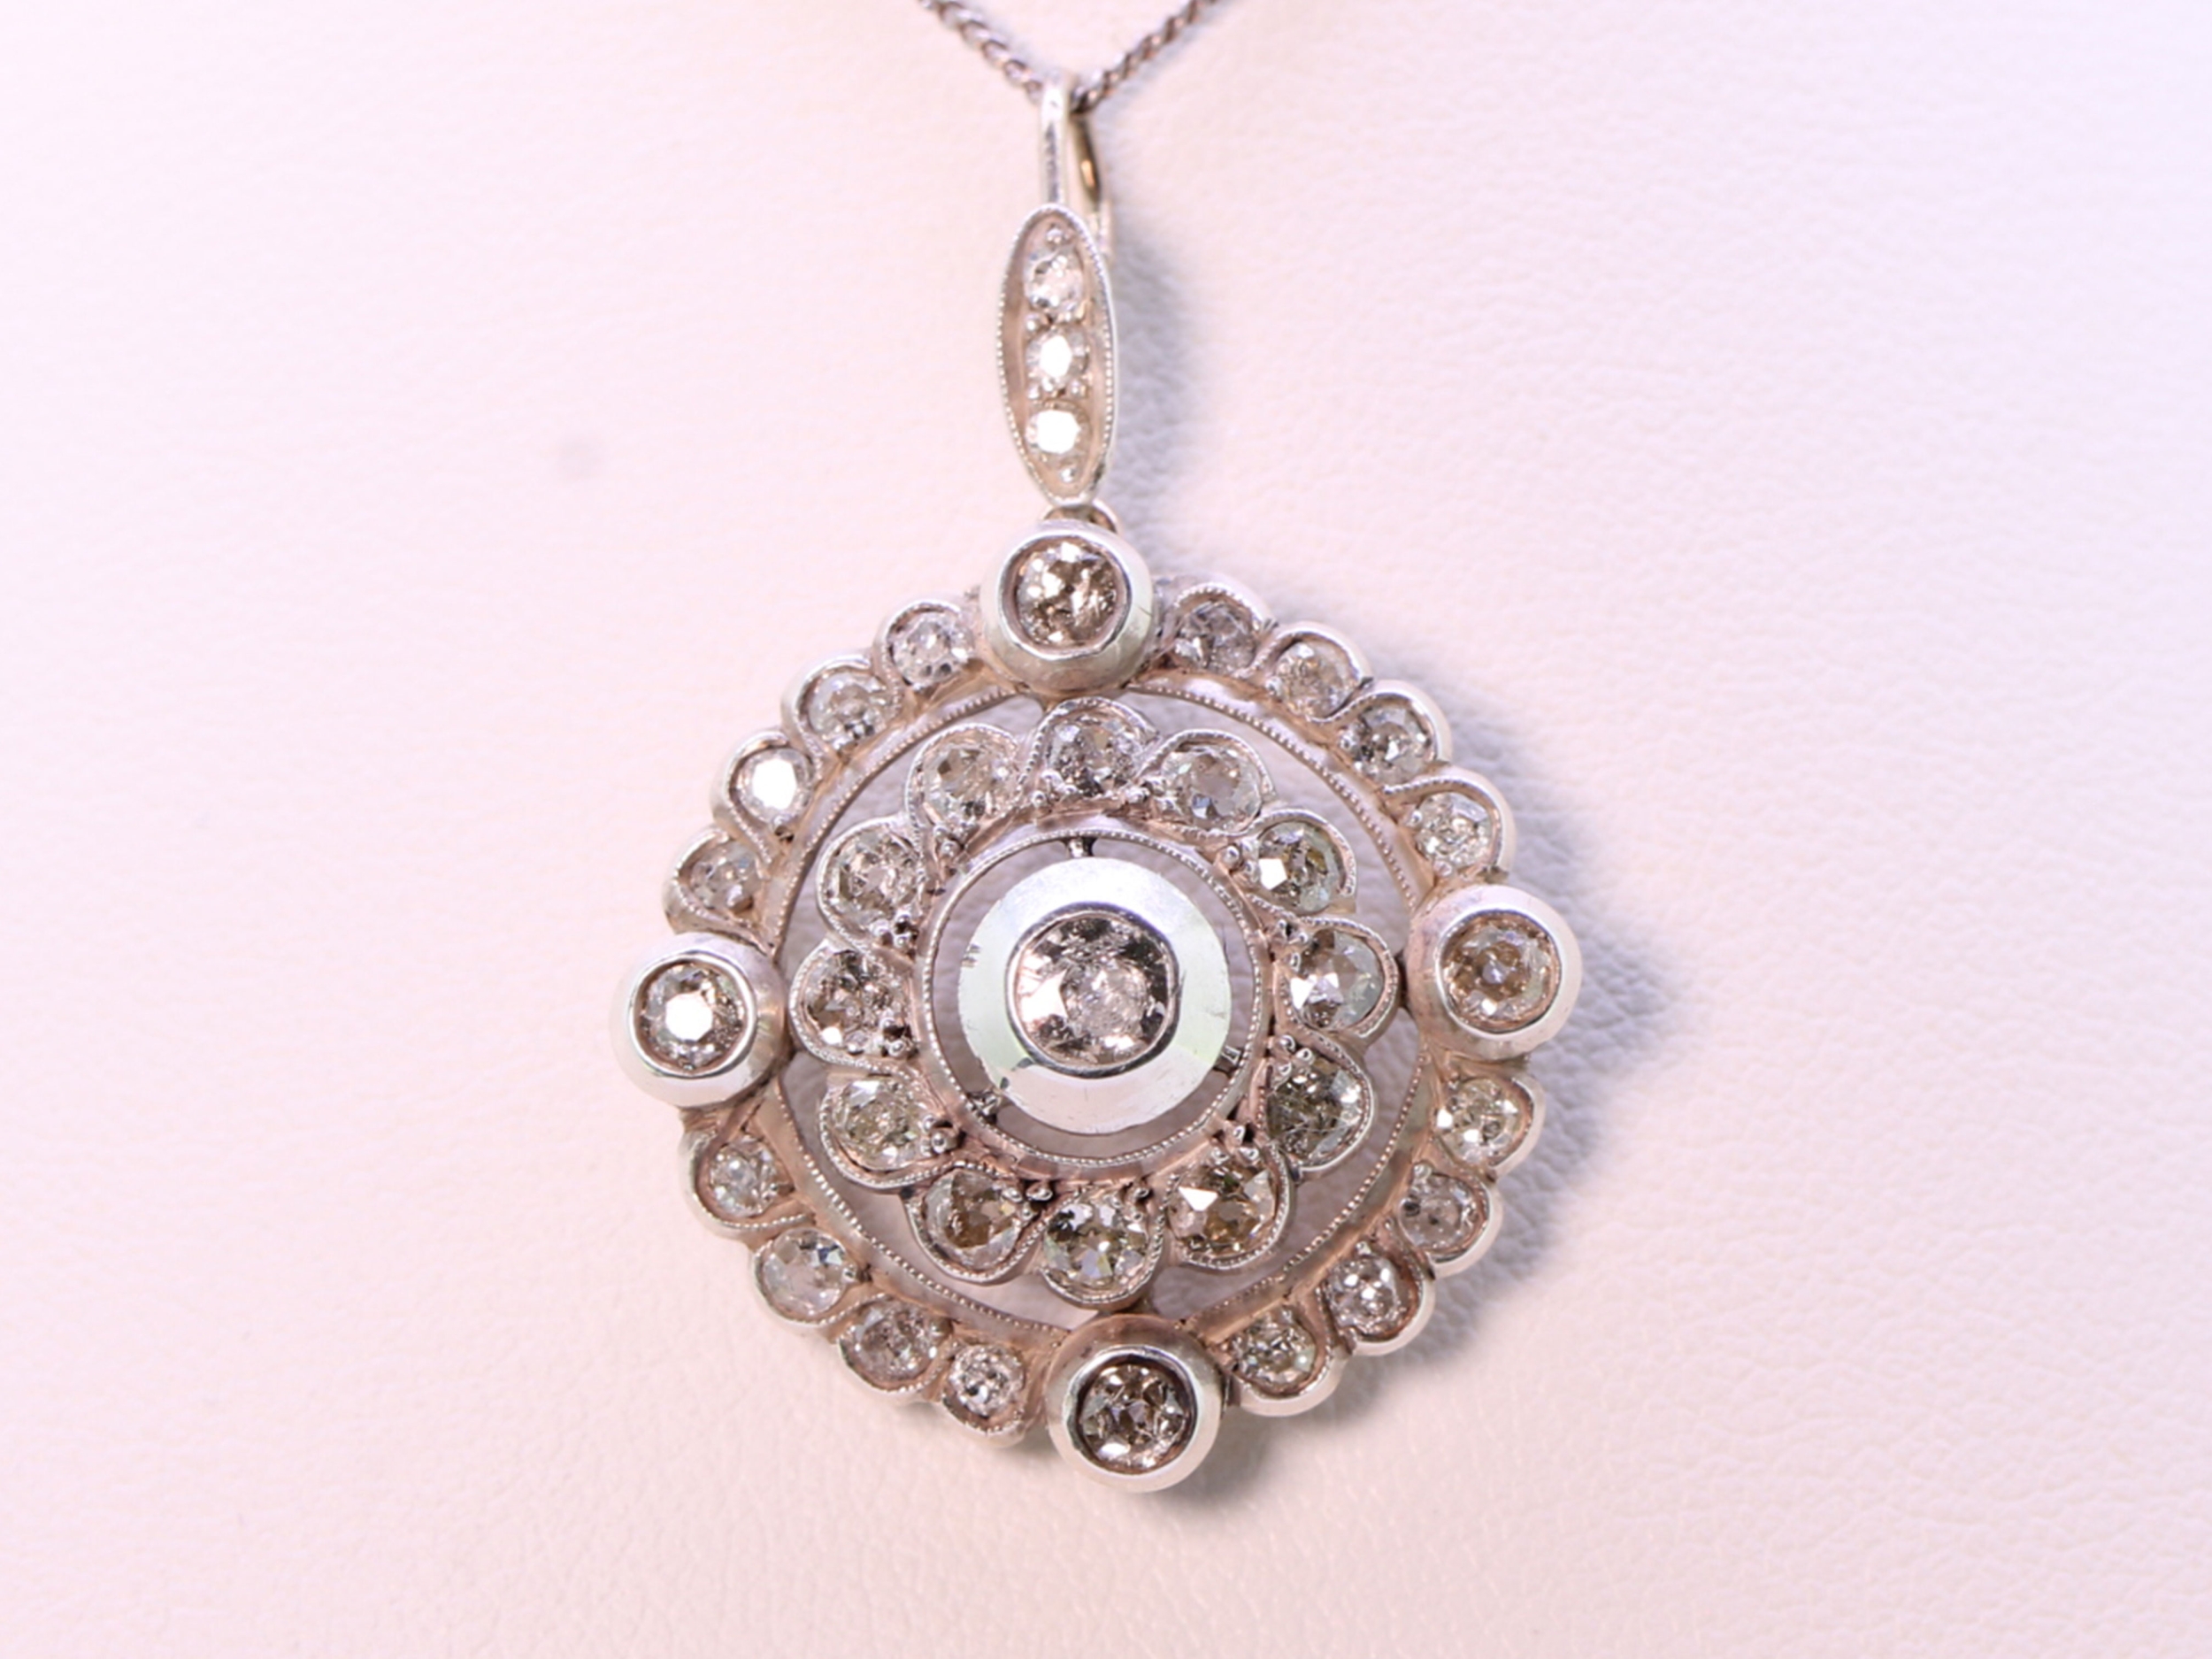 Victorian diamond set circular silver/gold pendant